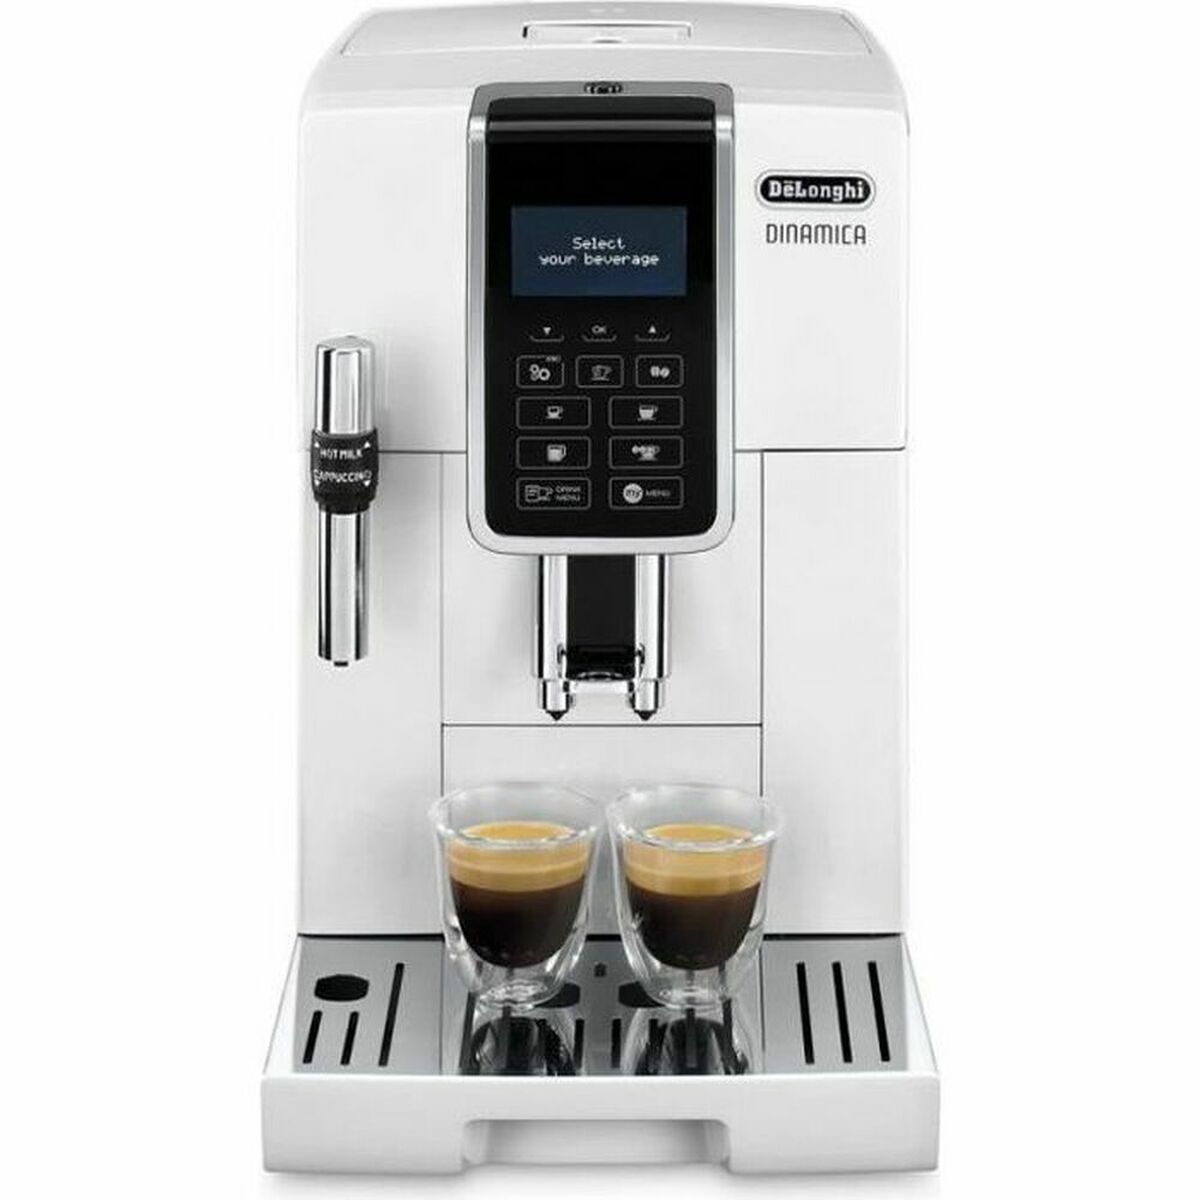 Superautomatische Kaffeemaschine DeLonghi 0132220020 Weiß 1450 W 1,8 L - CA International 